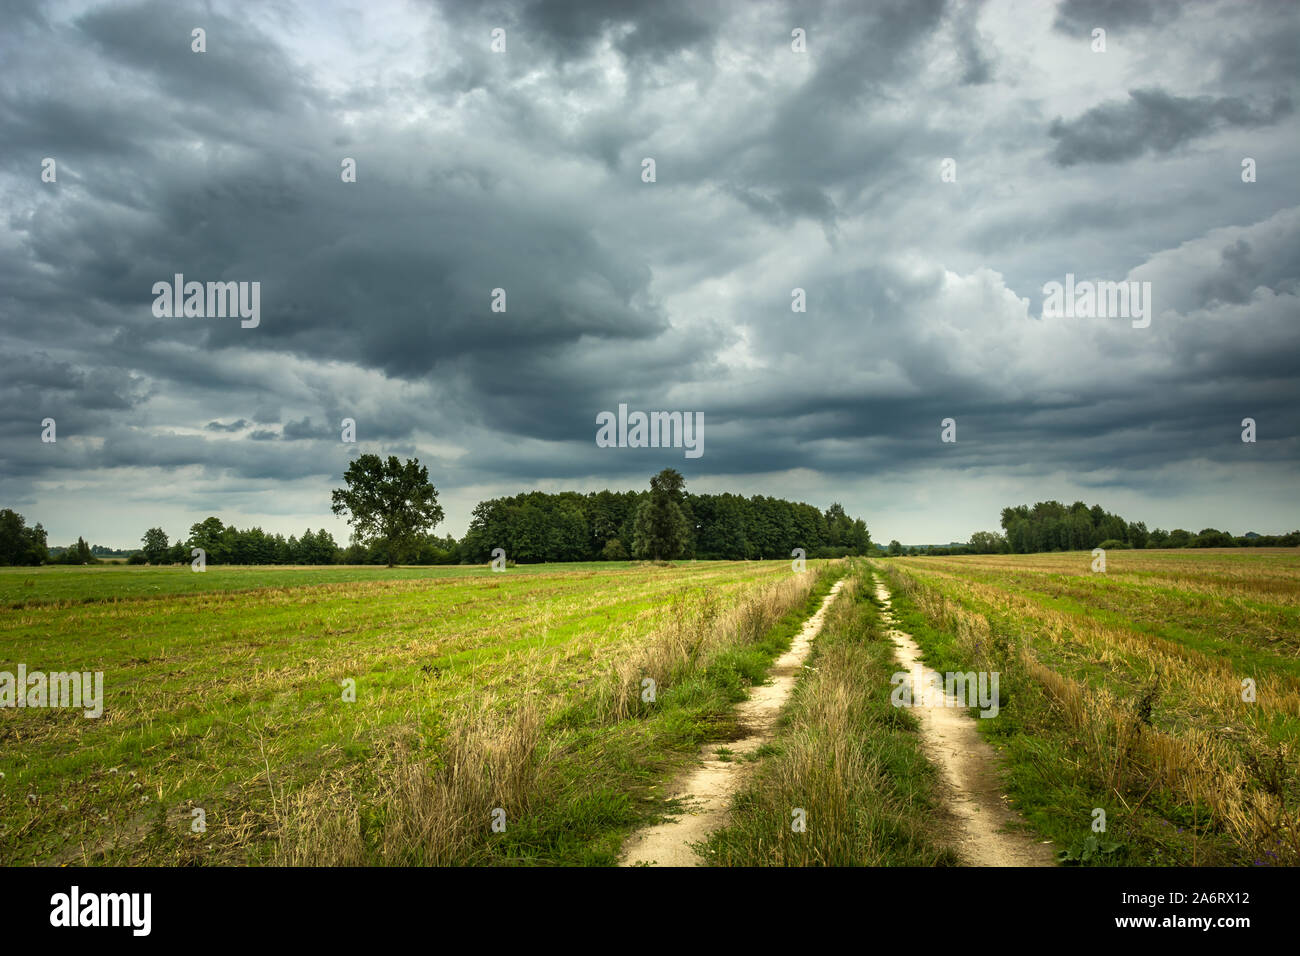 Ländliche Straße durch Felder, Bäume und graue Wolken am Himmel Stockfoto